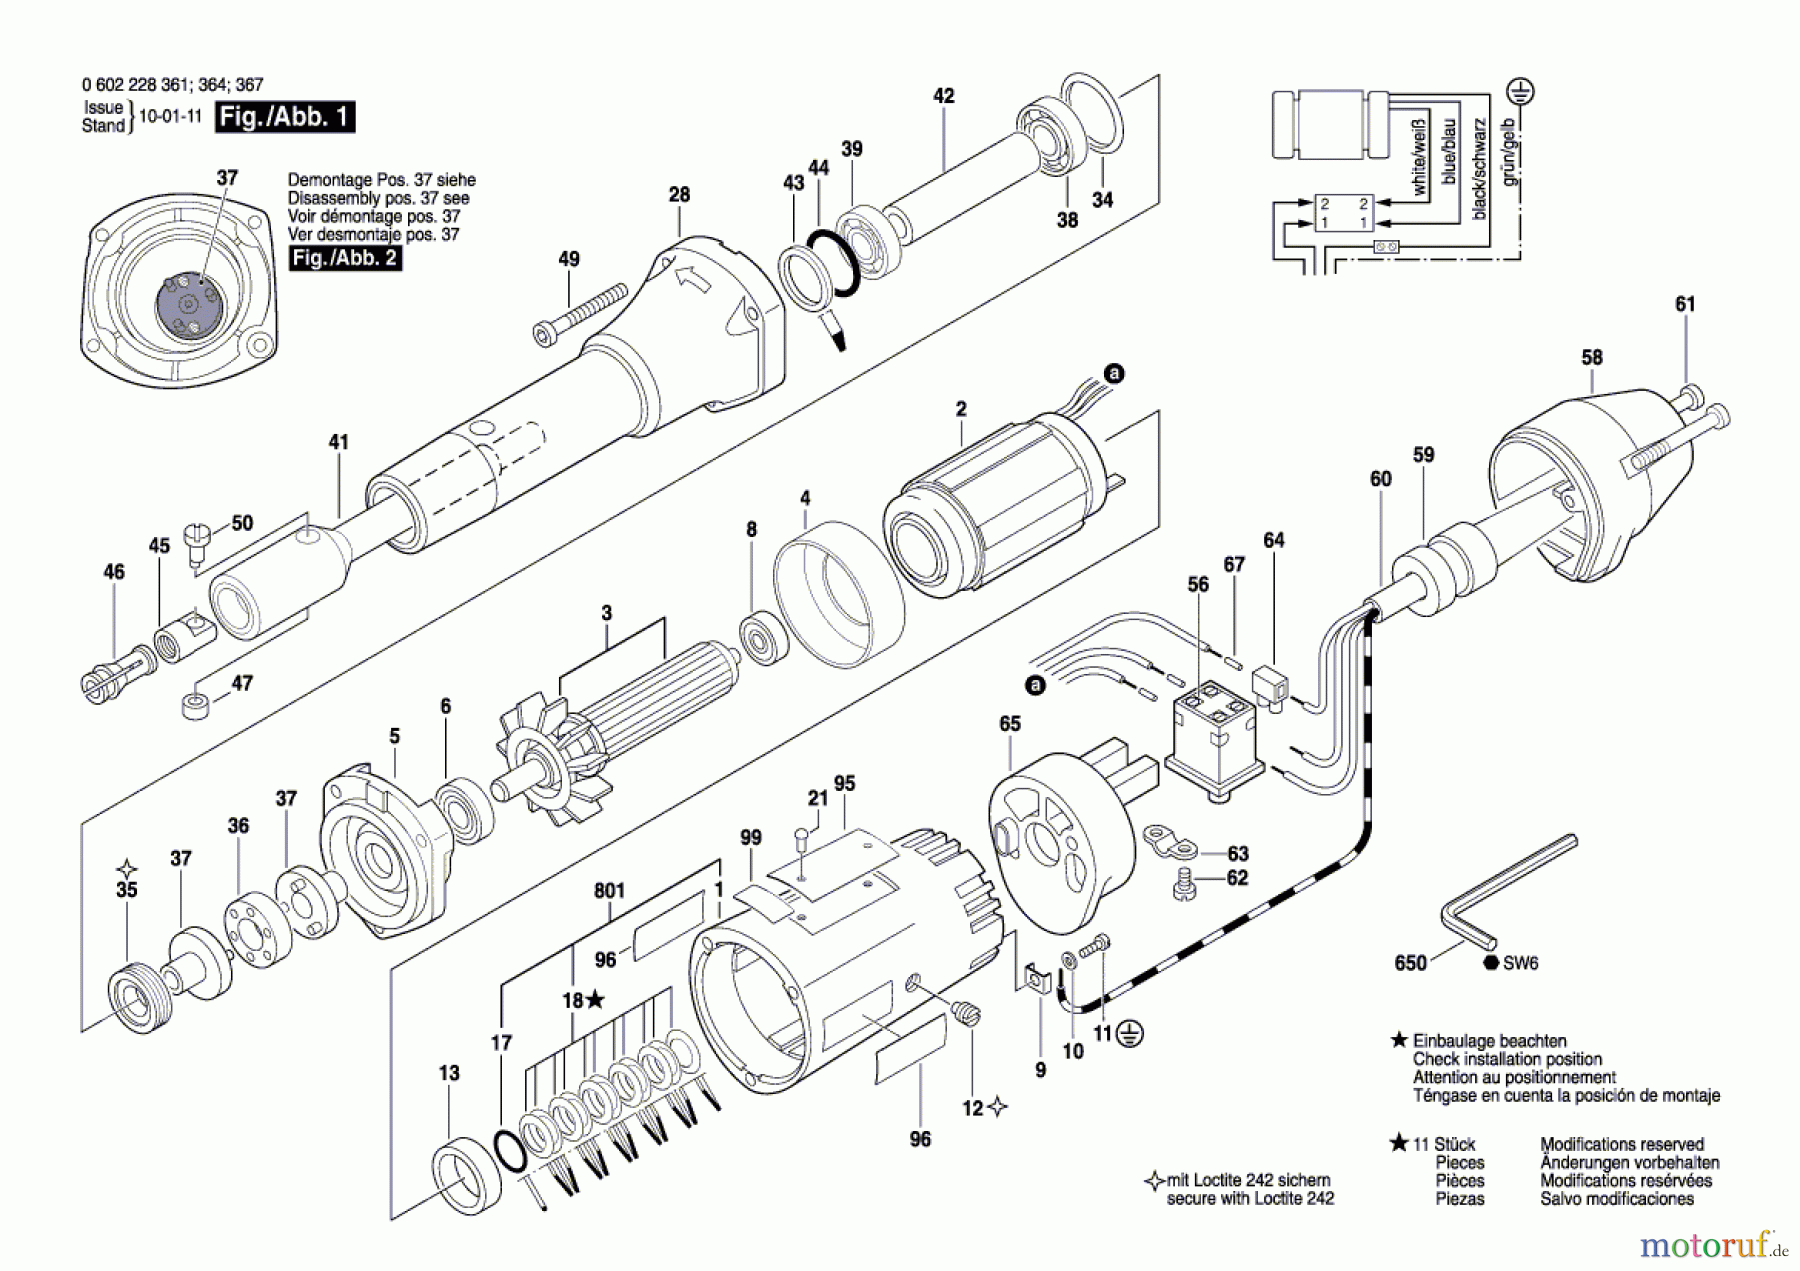  Bosch Werkzeug Hf-Geradschleifer GERADSCHLEIFER Seite 1